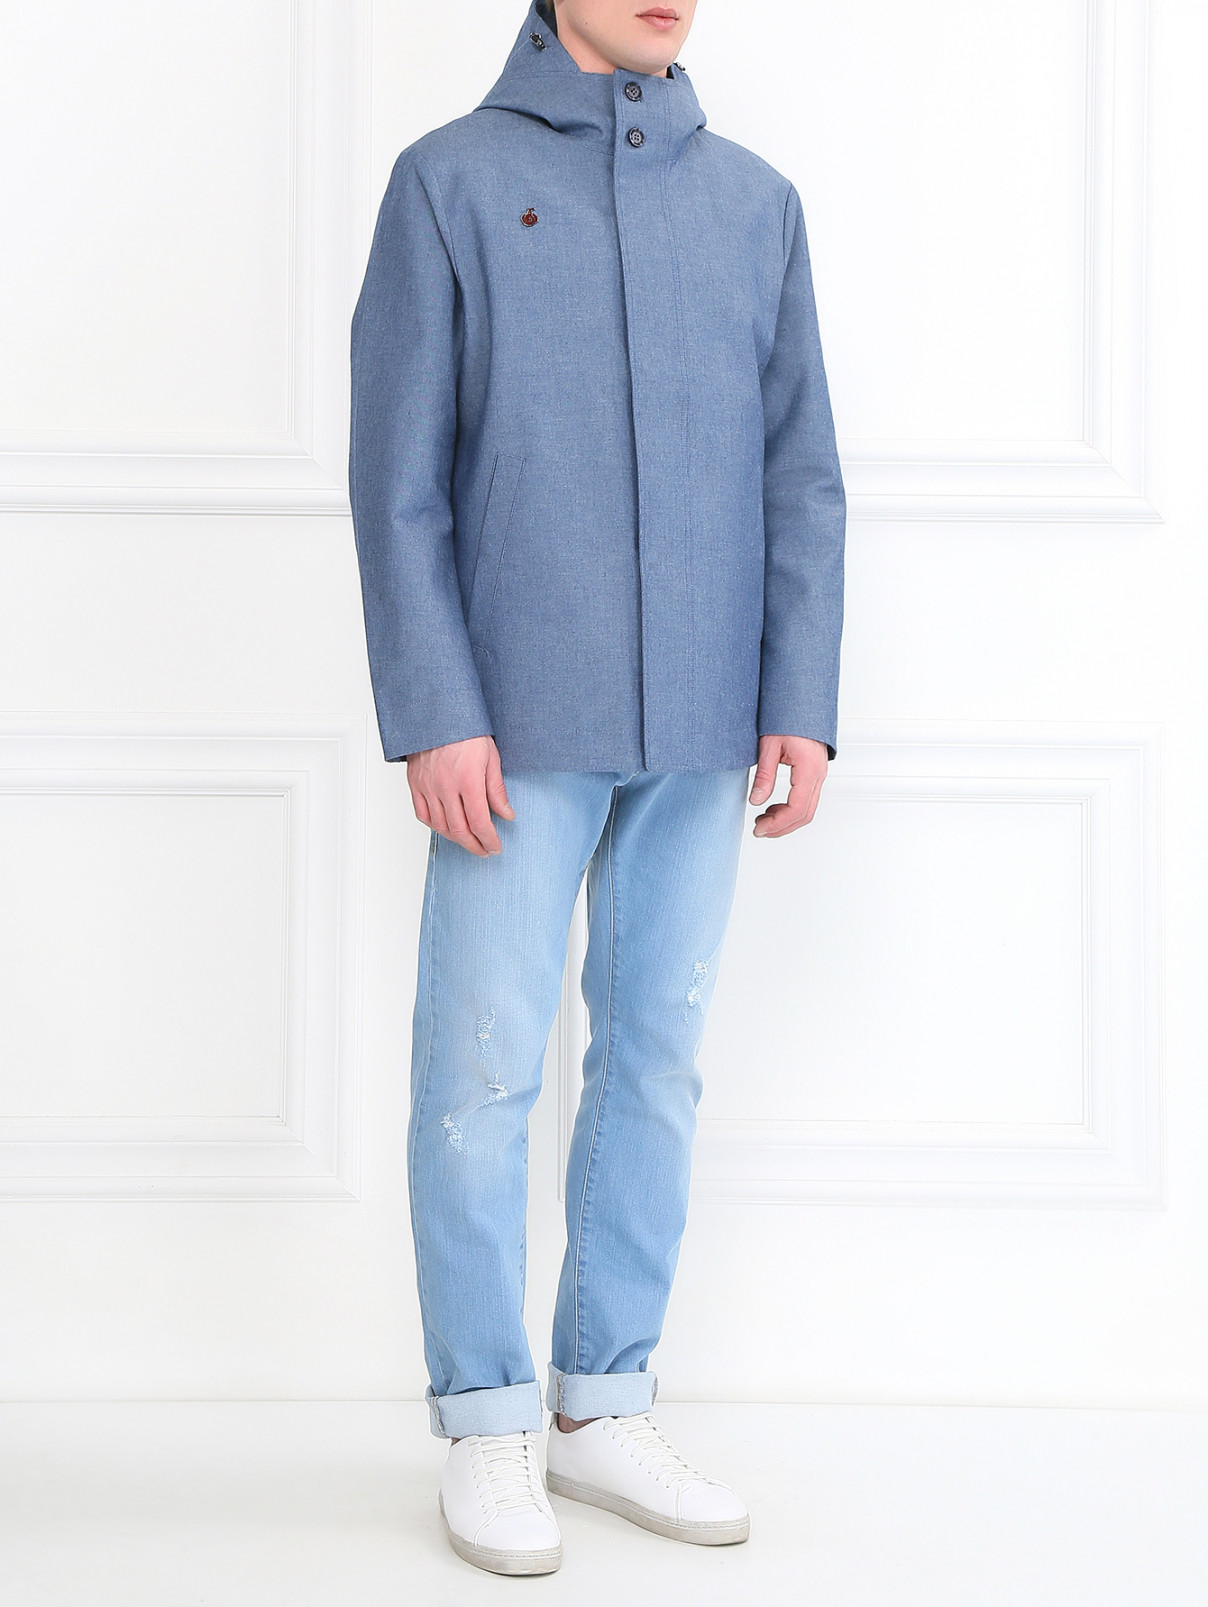 Куртка с капюшоном и боковыми карманами BOSCO  –  Модель Общий вид  – Цвет:  Синий